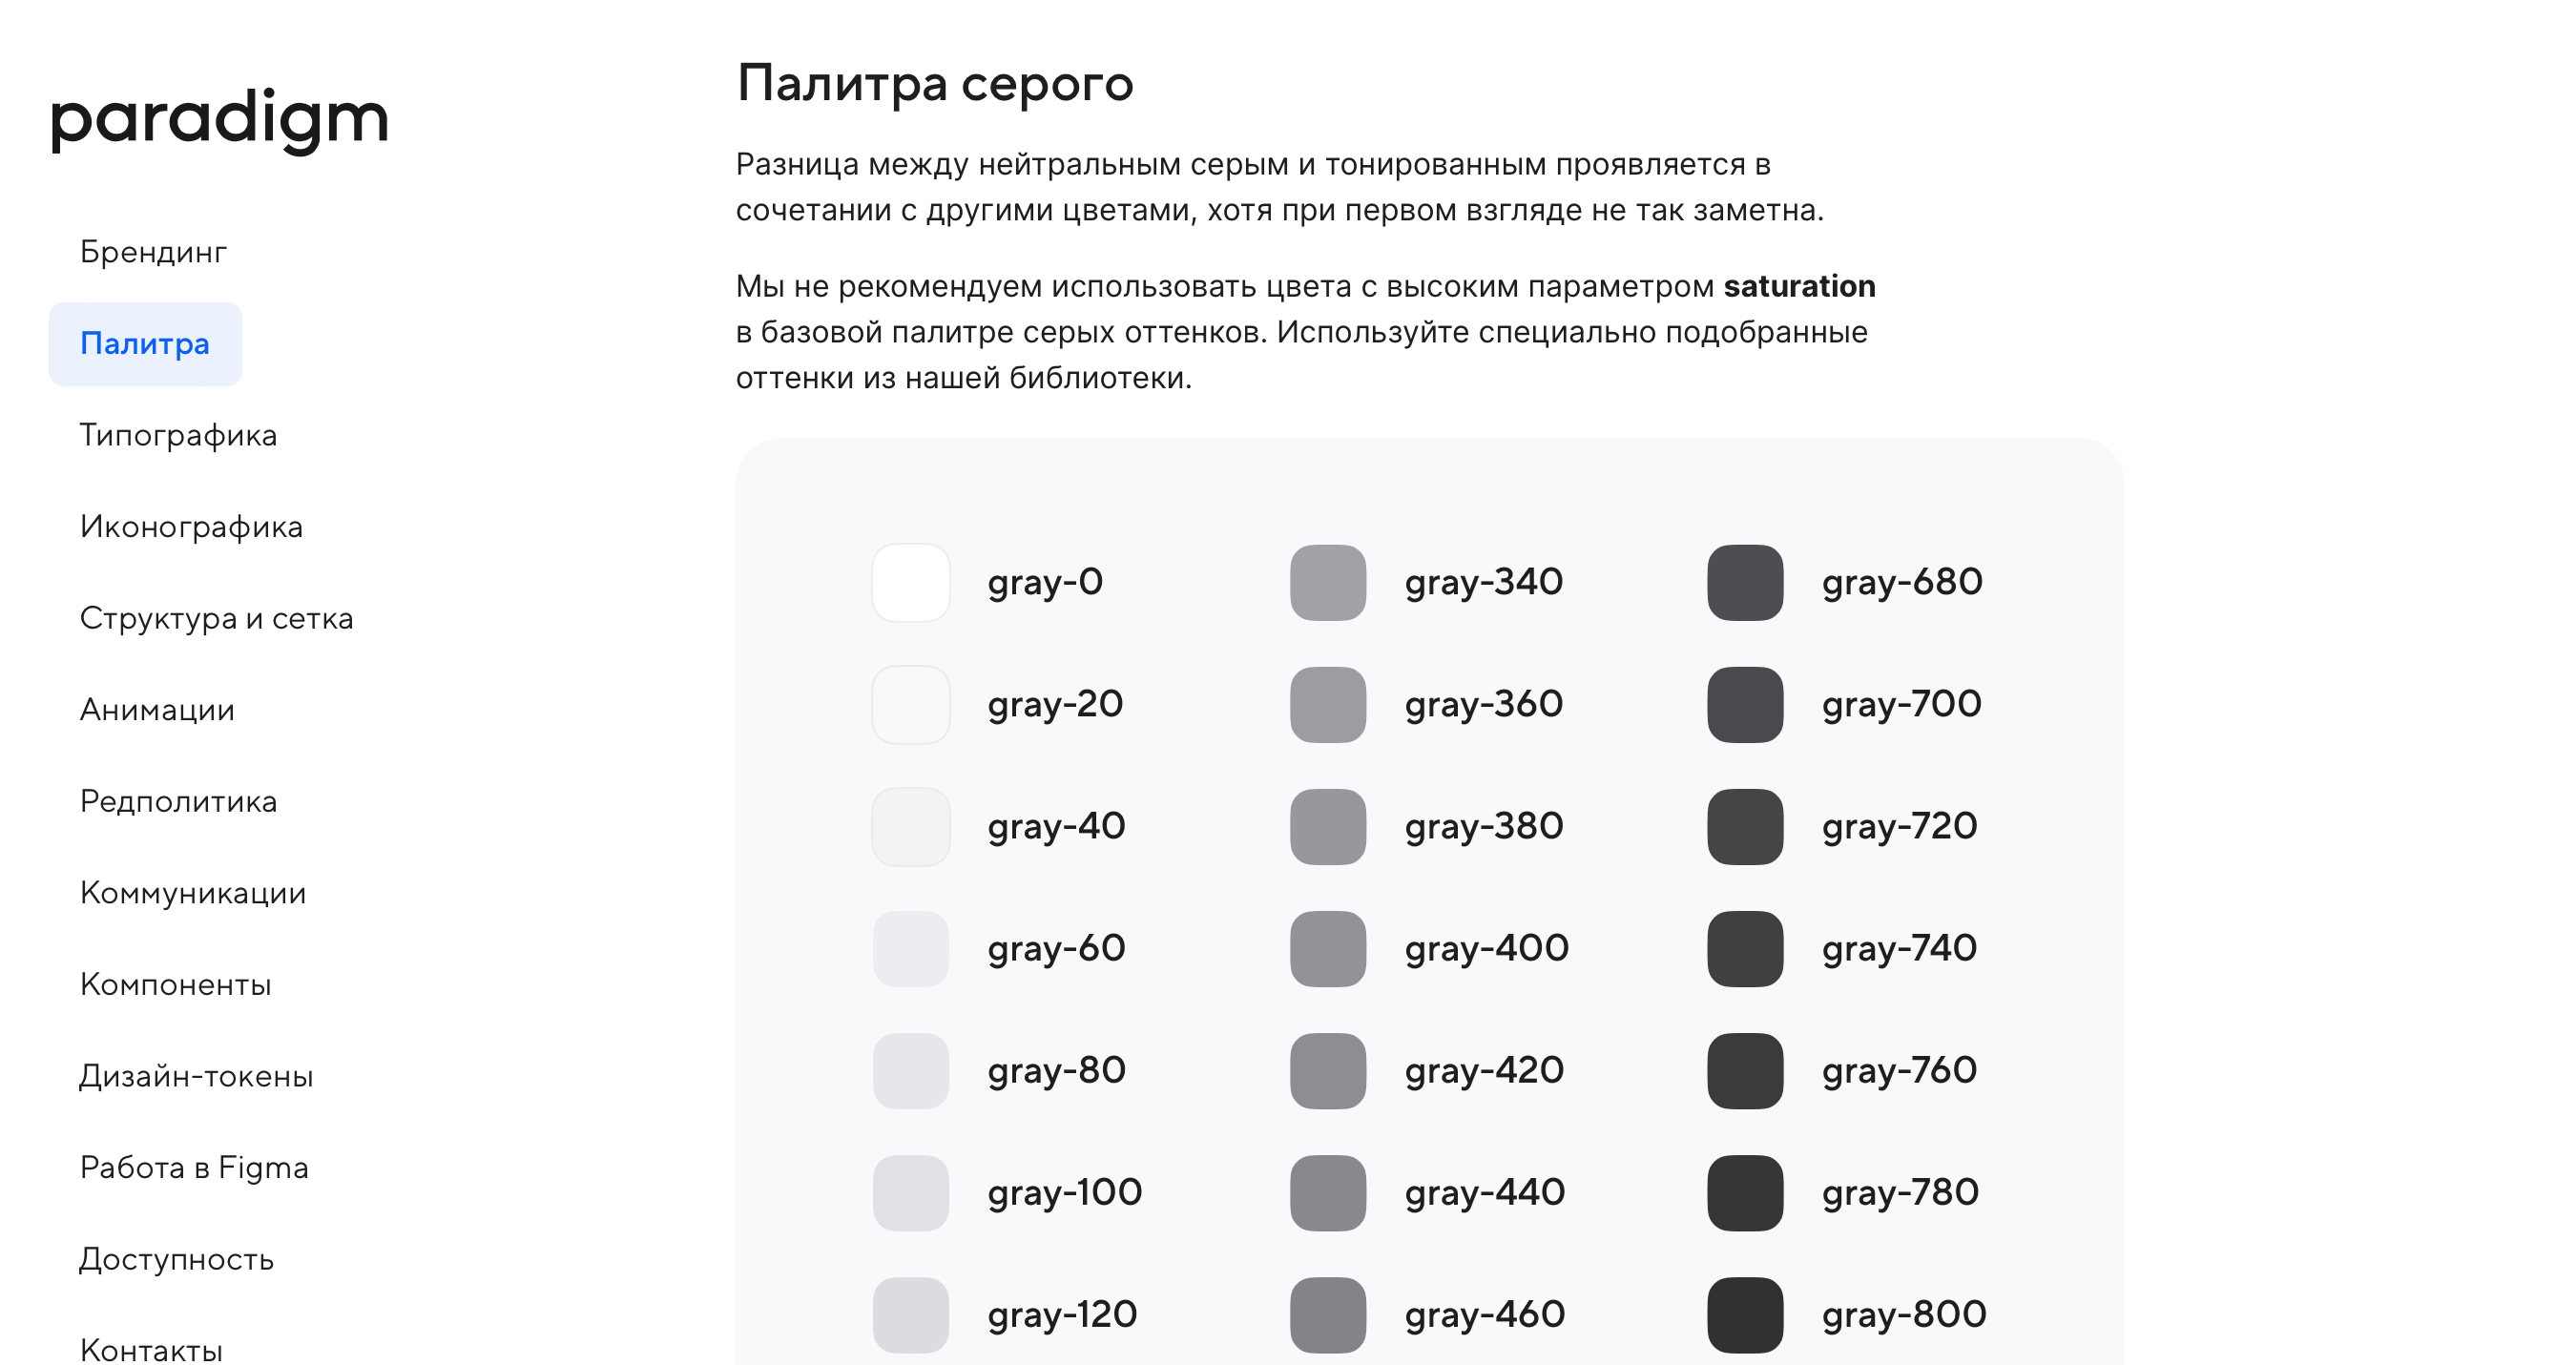 Скриншот дизайн-системы Paradigm от Mail.ru